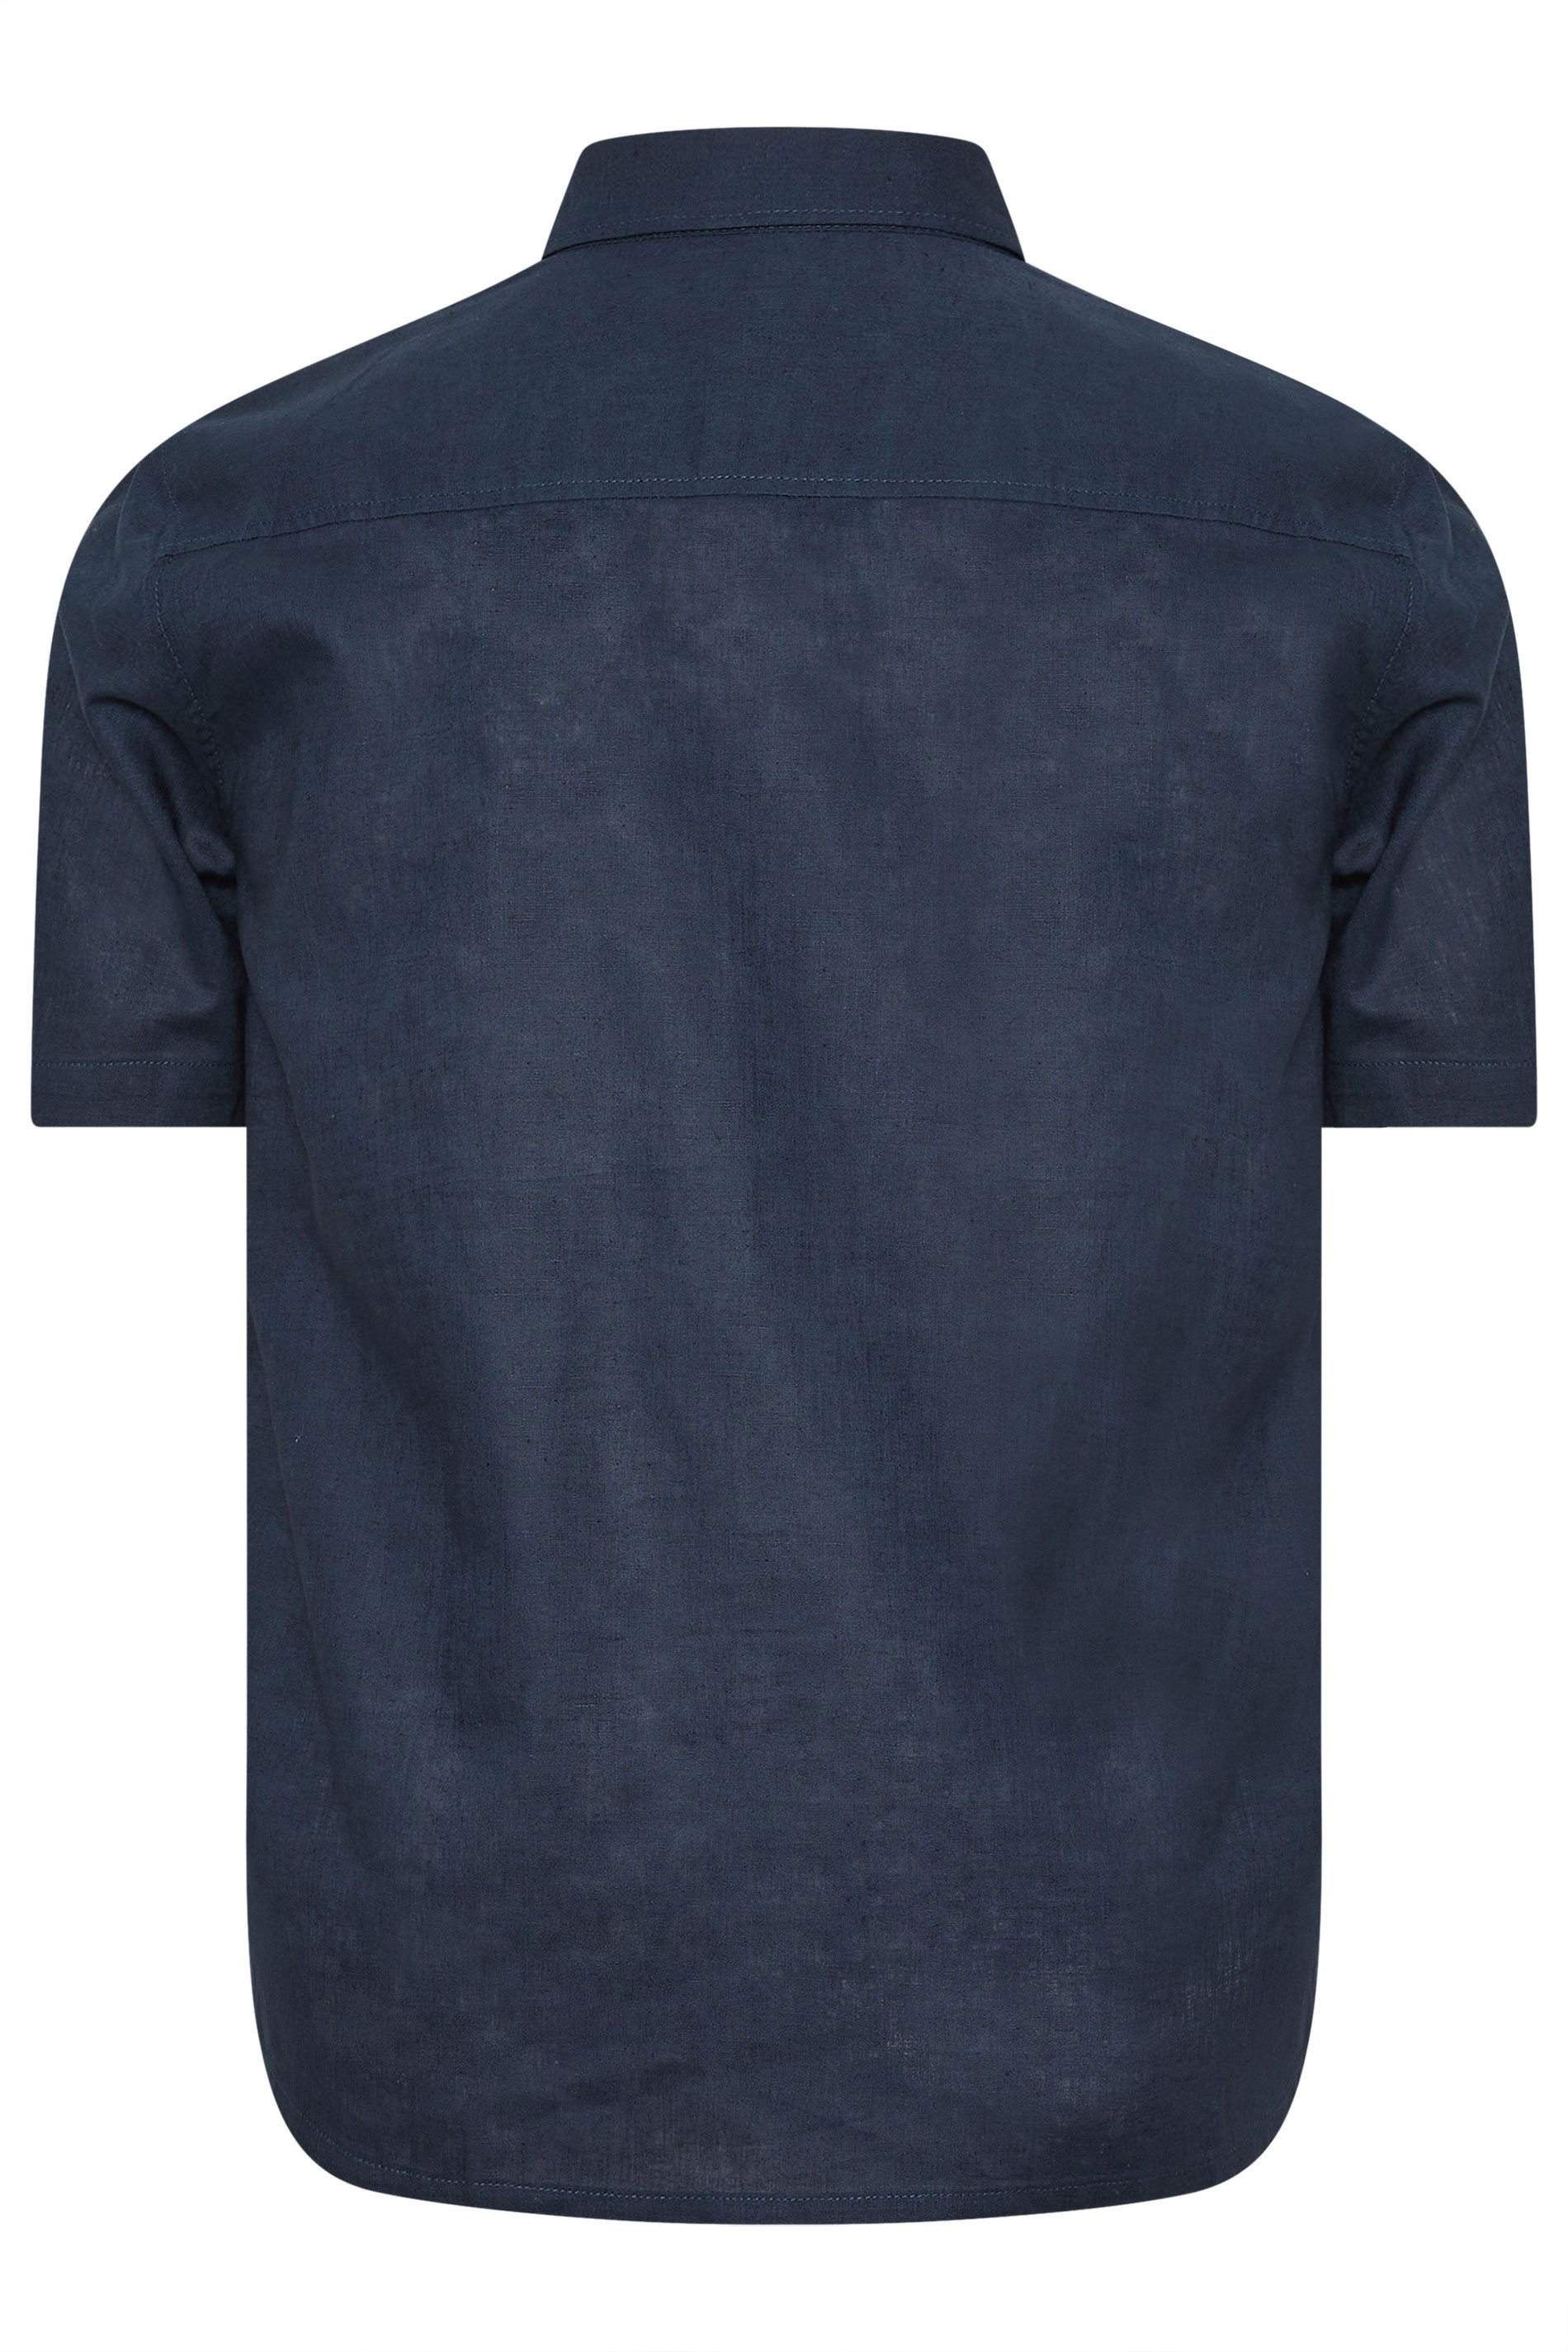 BadRhino Navy Blue Short Sleeve Linen Shirt | BadRhino 2